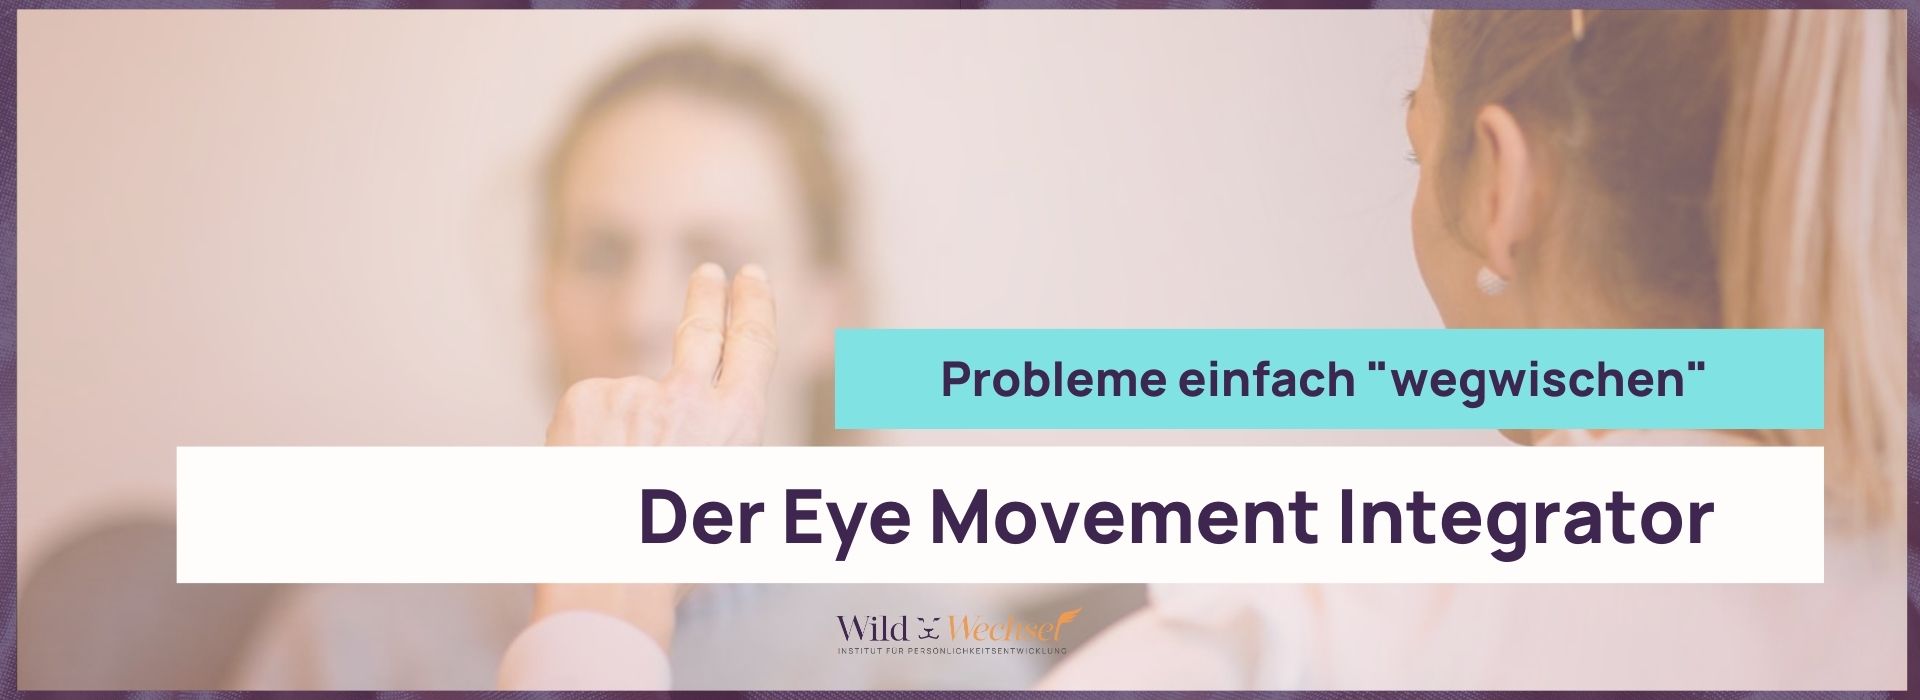 Coach unterstützt Frau darin, mit Hilfe des Eye Movement Integrators belastende Gefühle zu überwinden